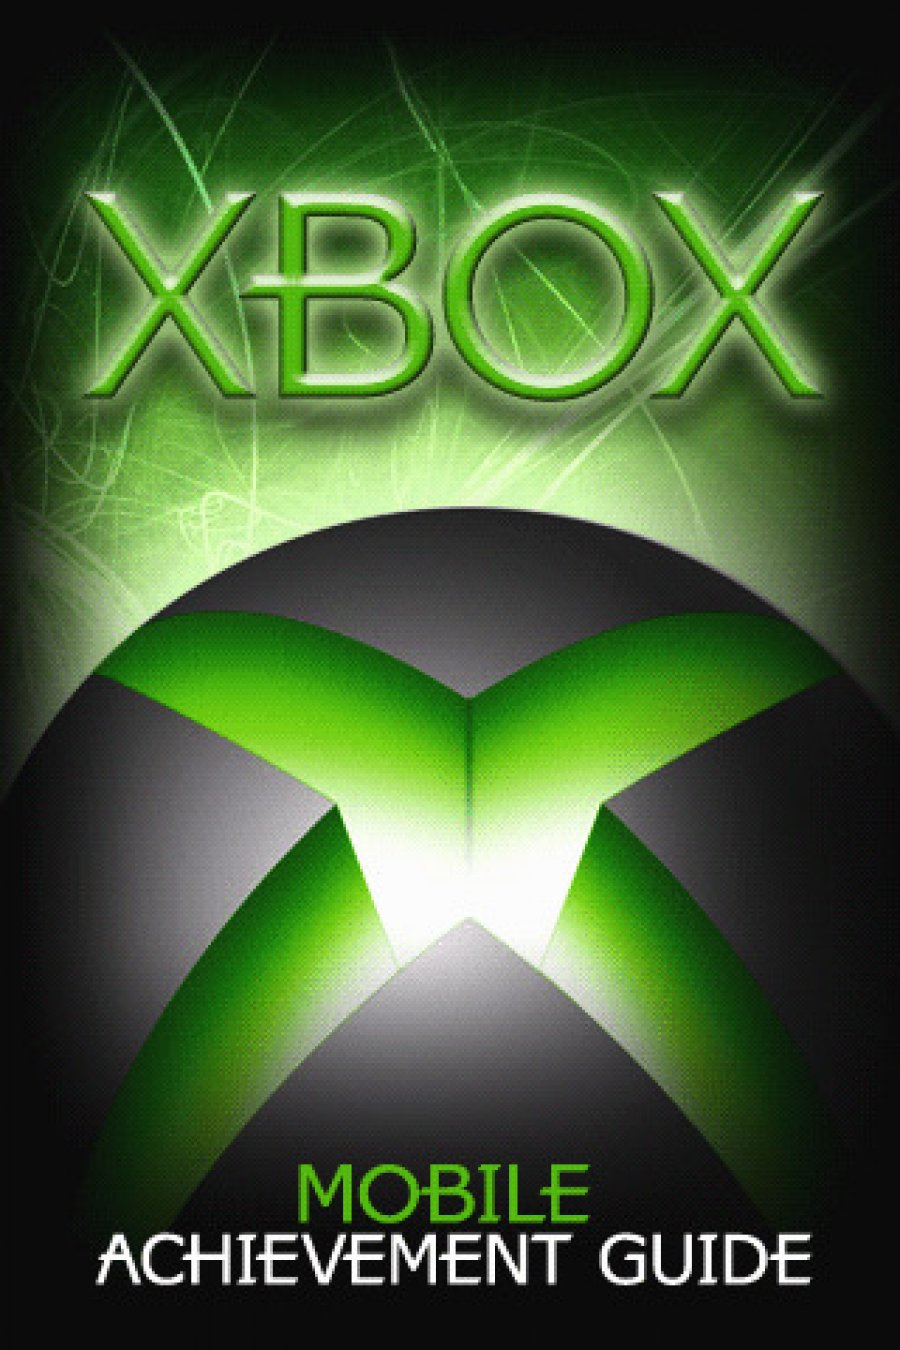 Xbox Achievement Guide